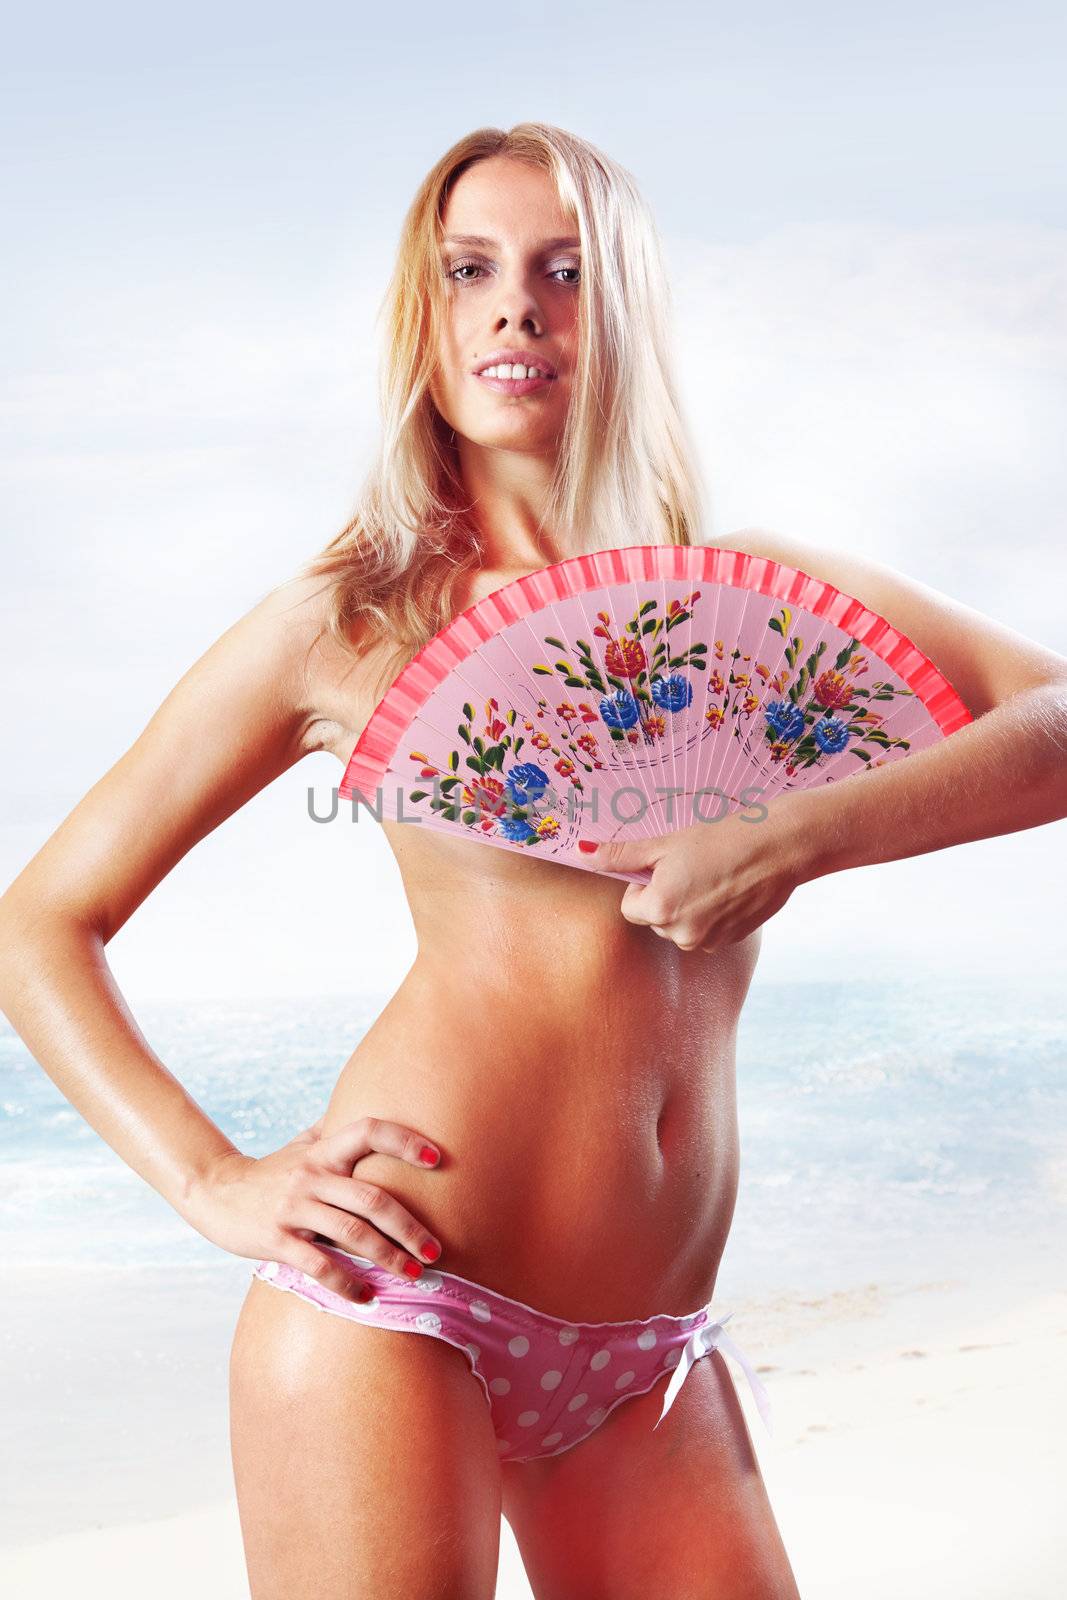 beautiful tanned woman in pink bikini holding fan on beach